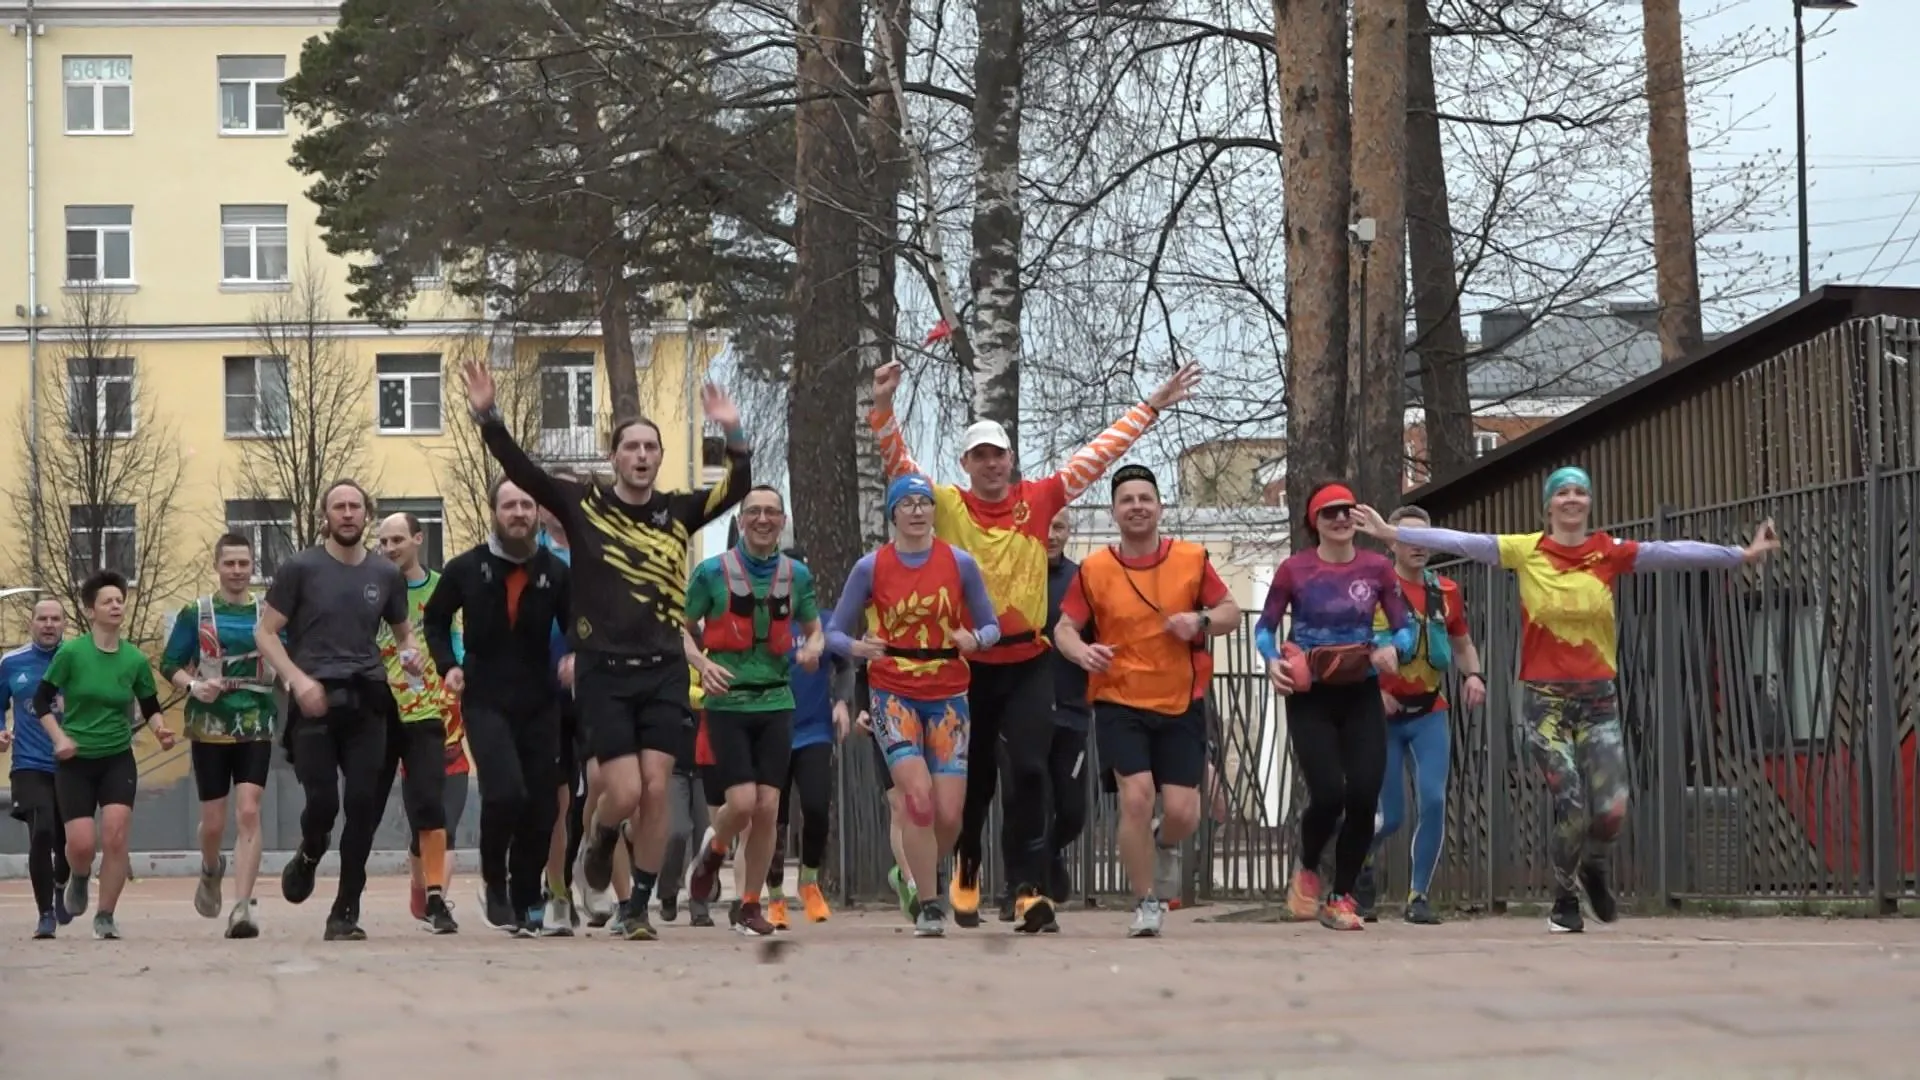 Около 200 легкоатлетов выступили на марафоне в Балашихе